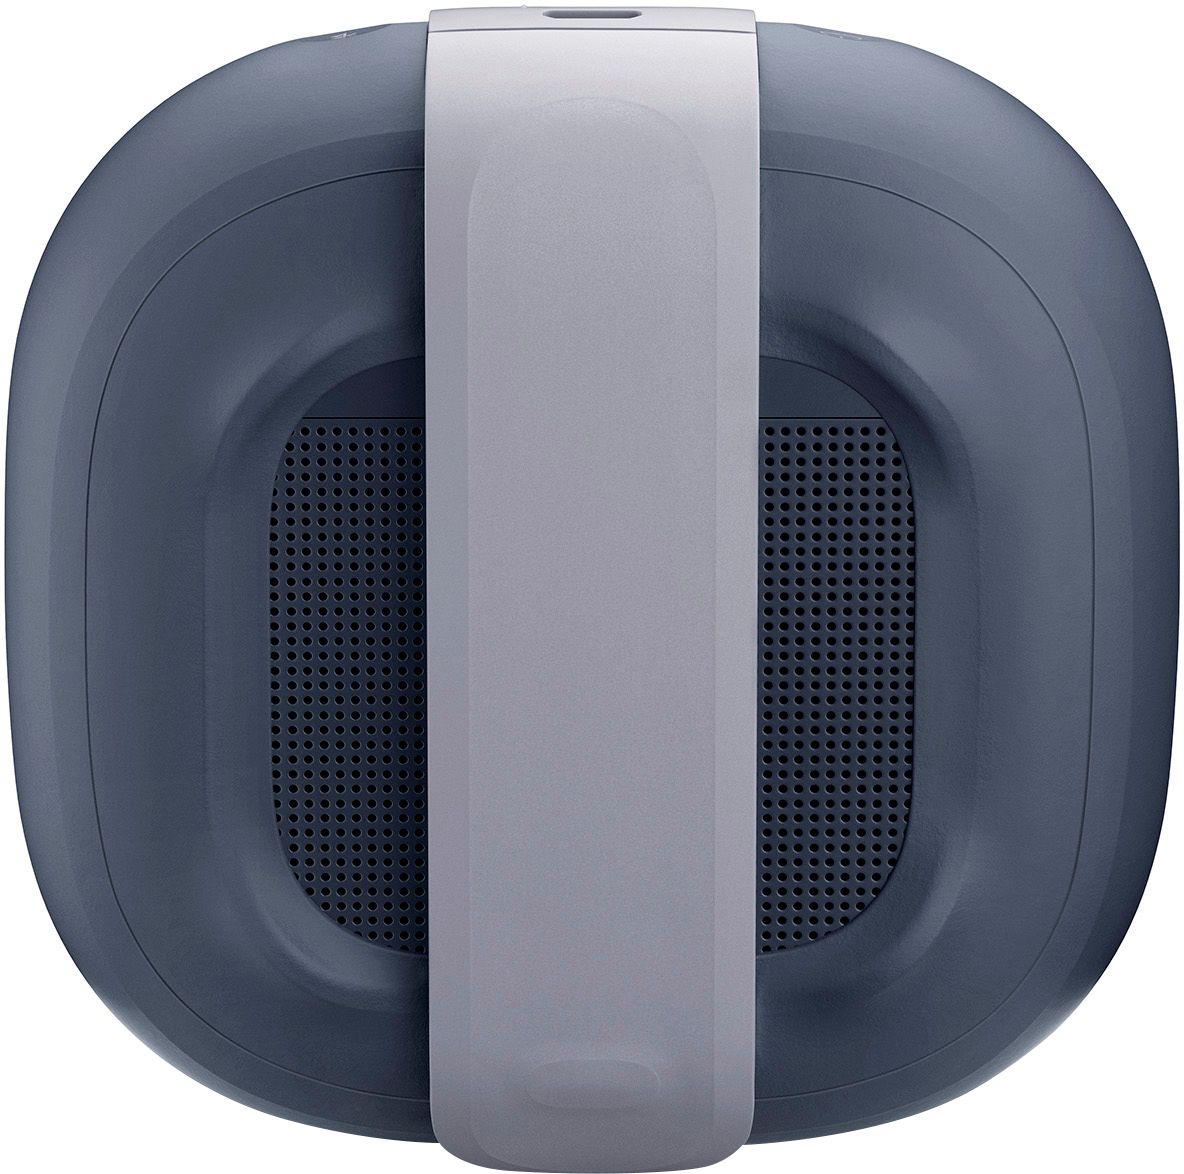 bose soundlink micro bluetooth speaker best buy